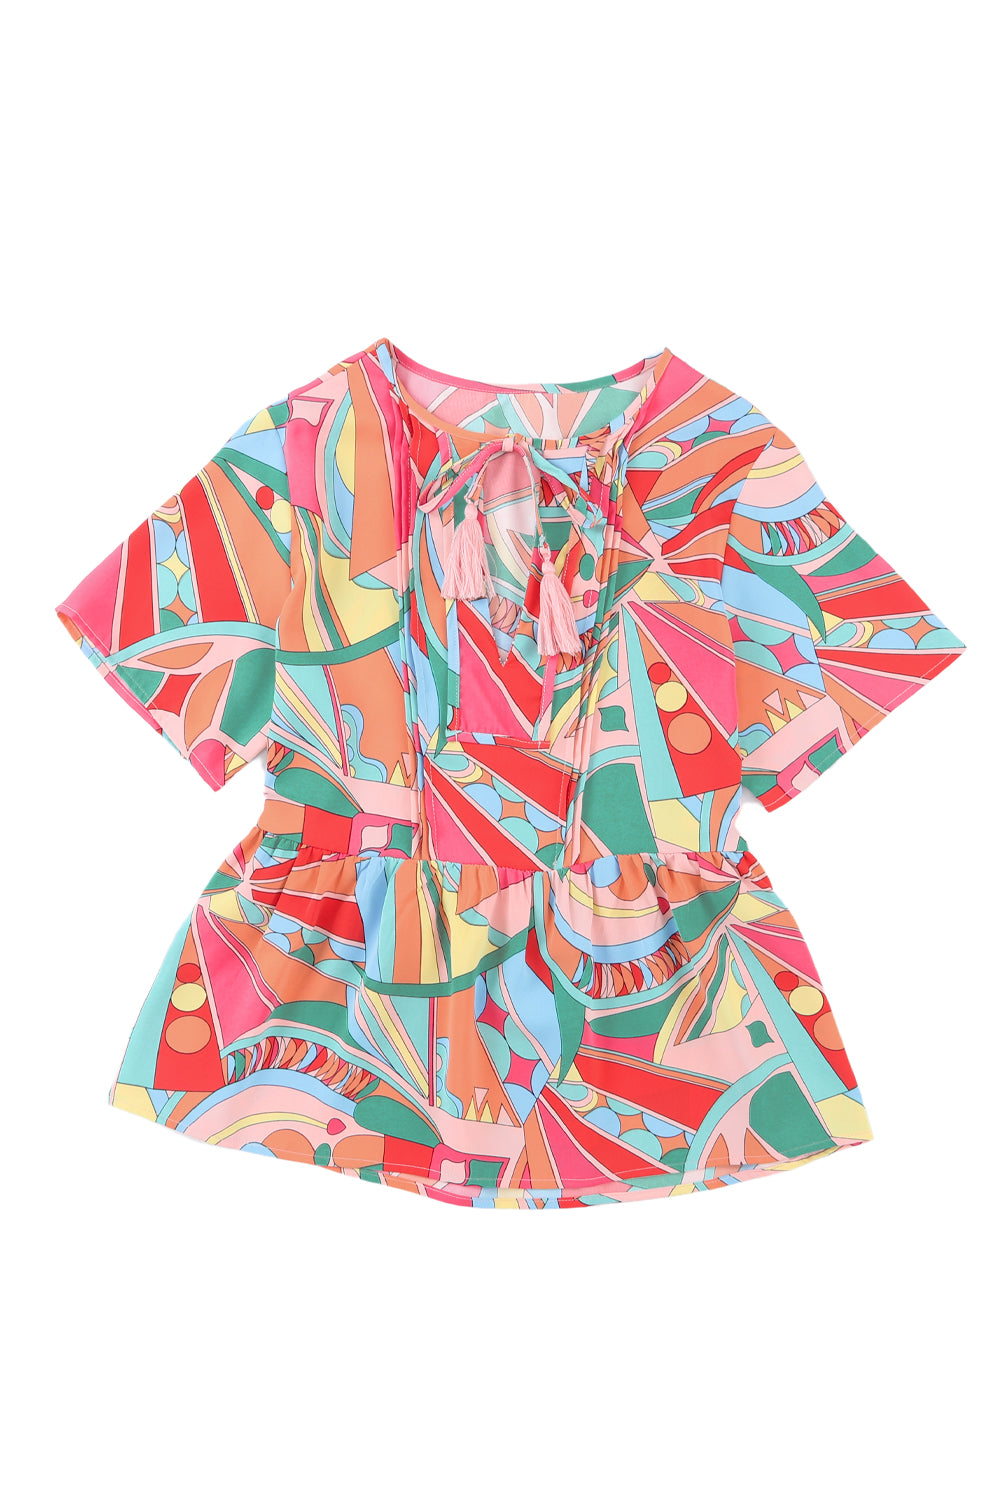 Mehrfarbige, fließende Bluse mit abstraktem Boho-Muster und geteiltem V-Ausschnitt